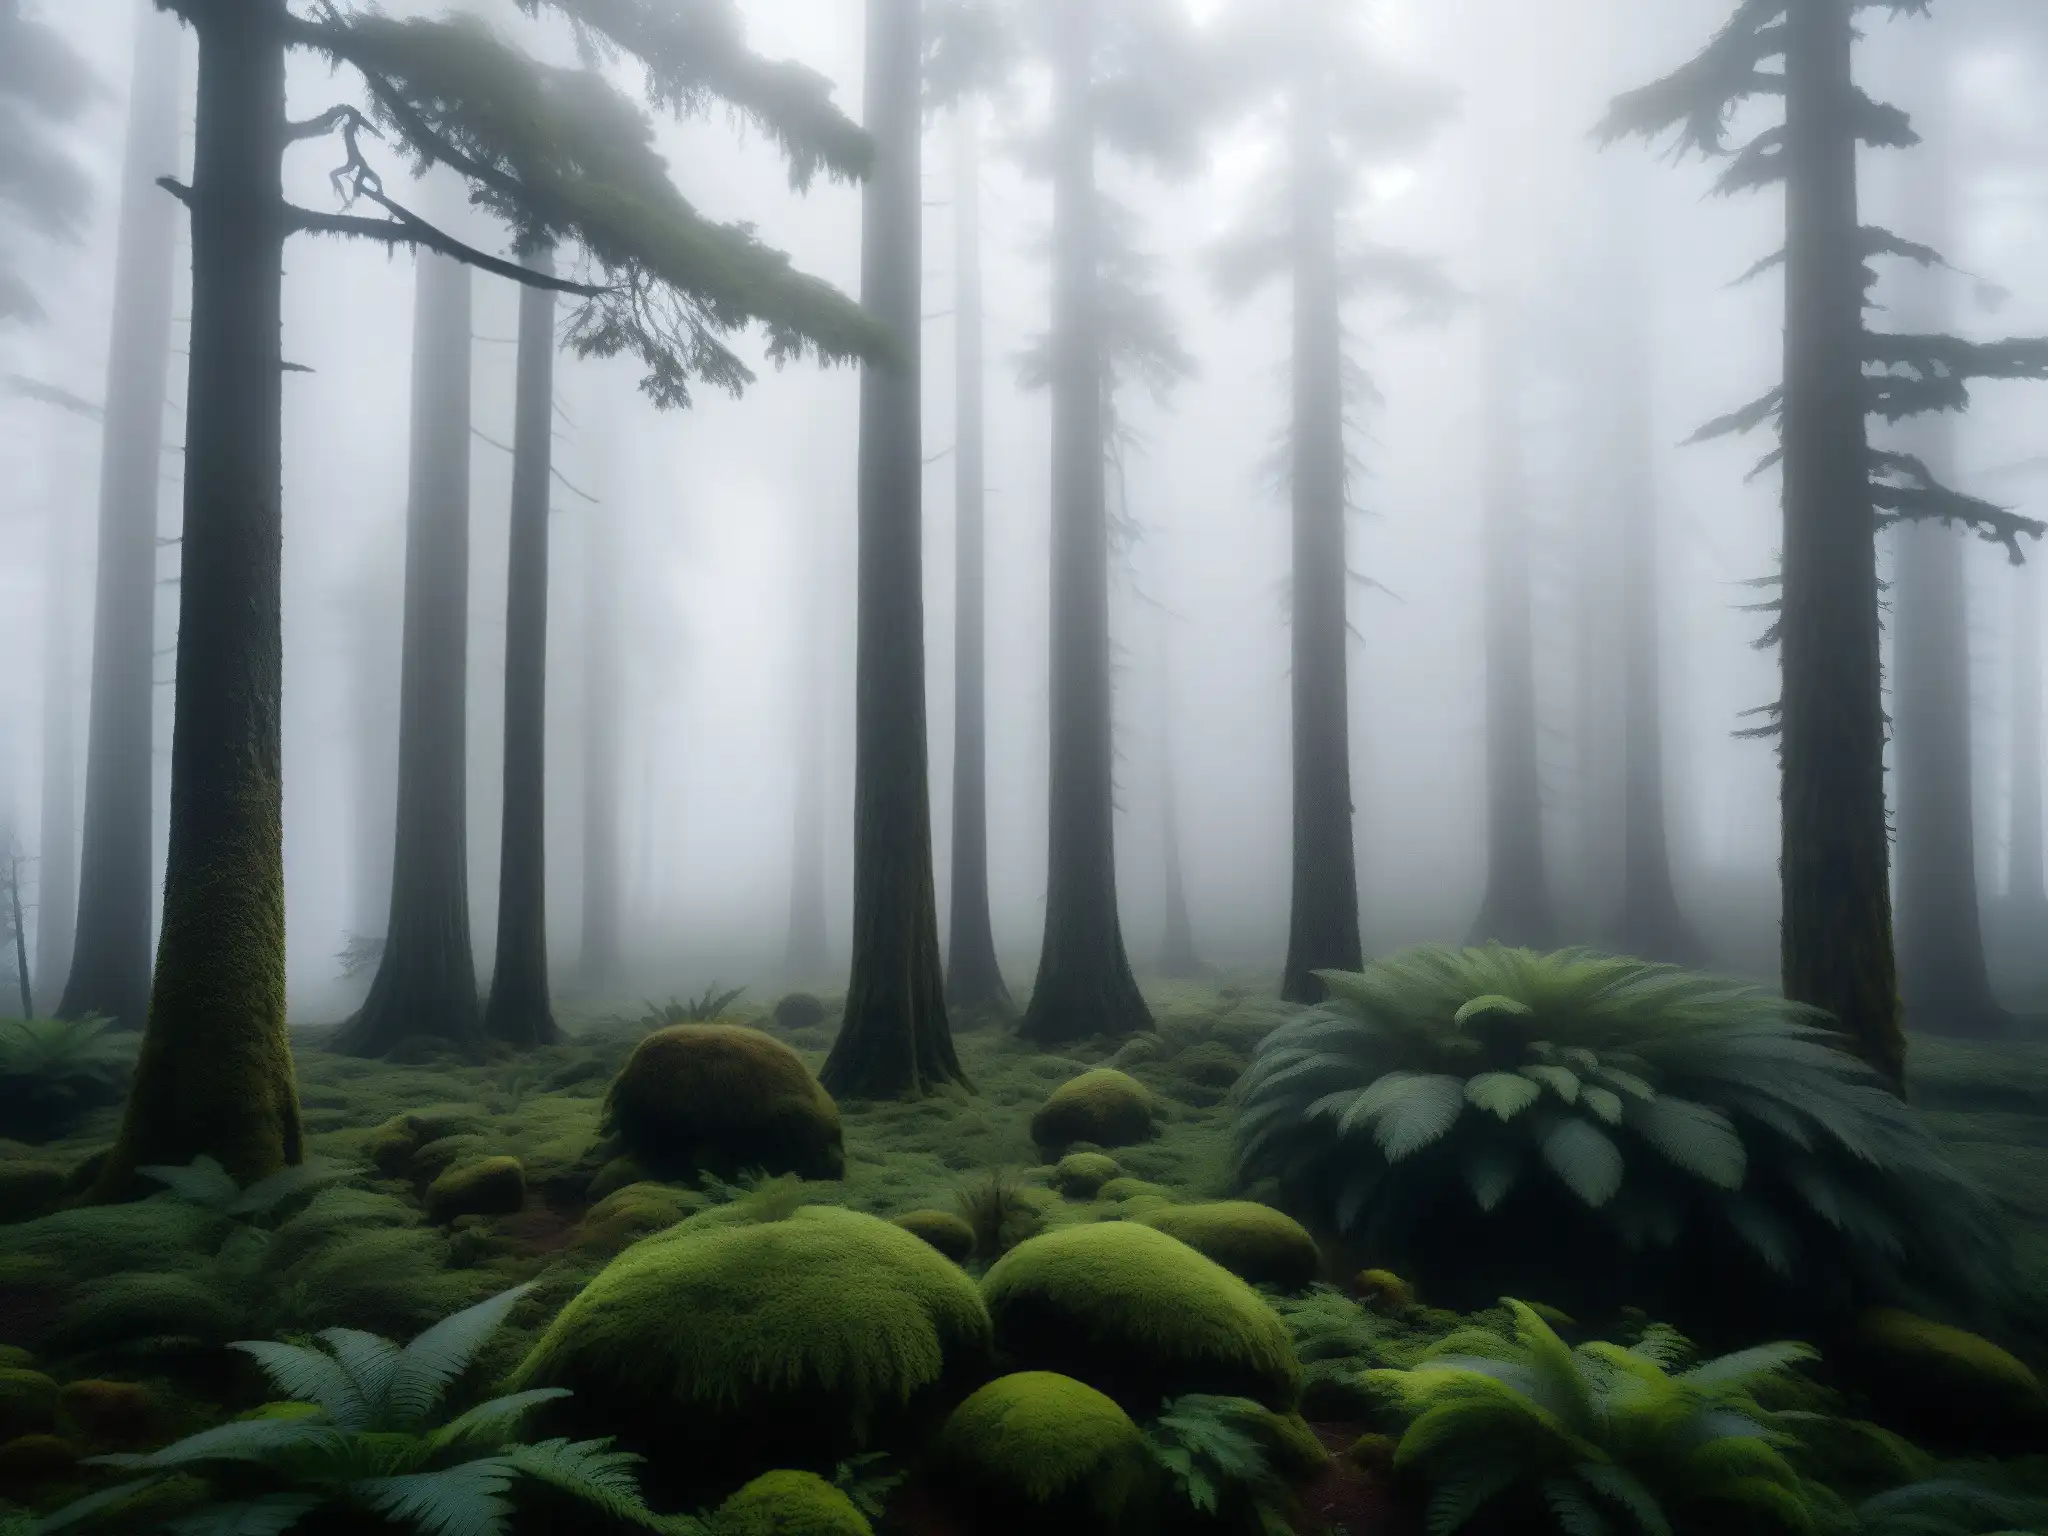 Imagen de un misterioso bosque neblinoso en la remota naturaleza de Chile, evocando los avistamientos del culebrón en Chile